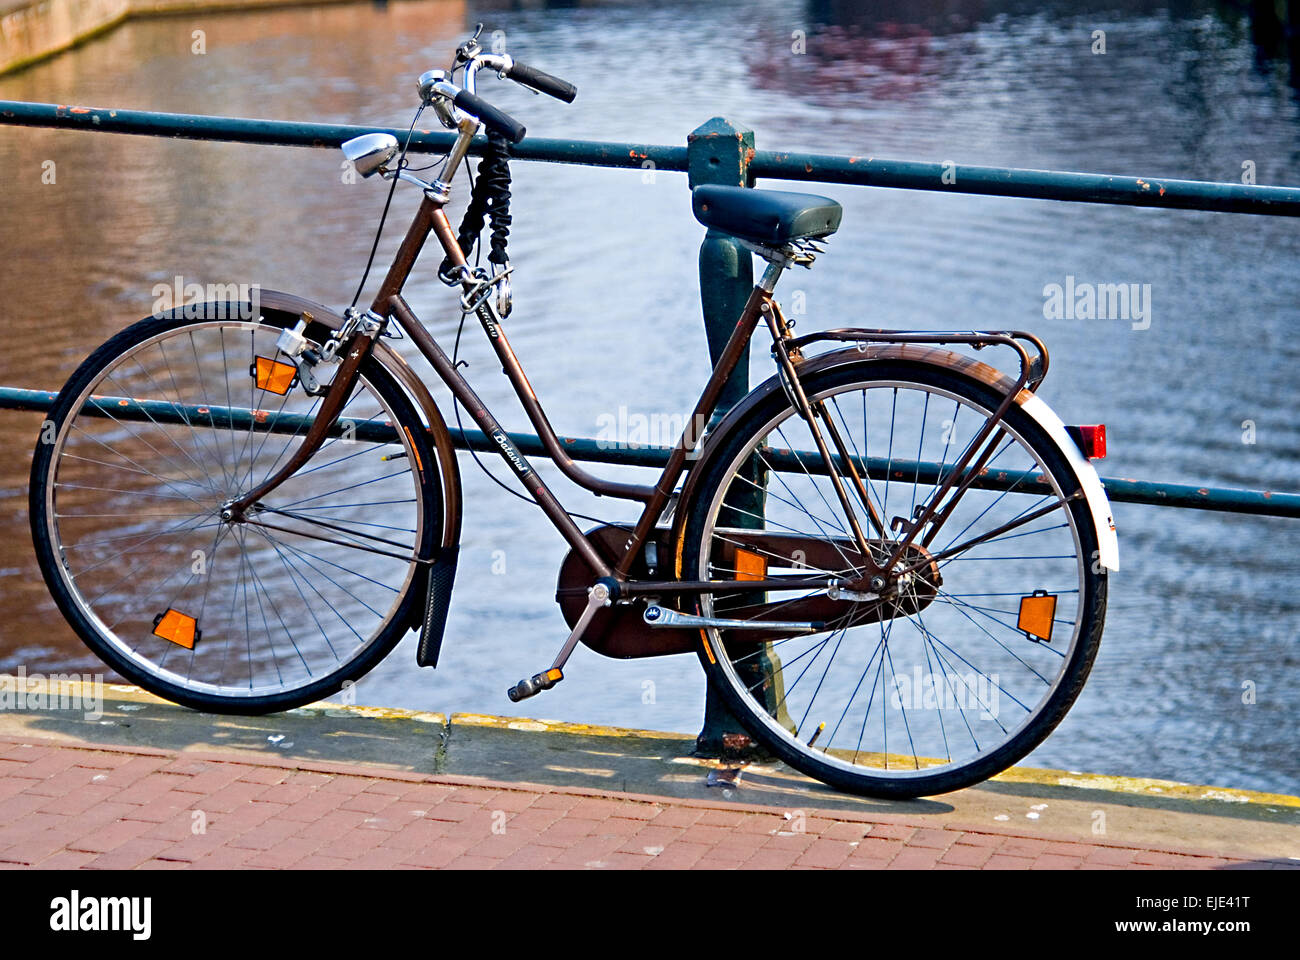 Bicicleta recostada contra barandillas en el puente del canal en Amsterdam Foto de stock